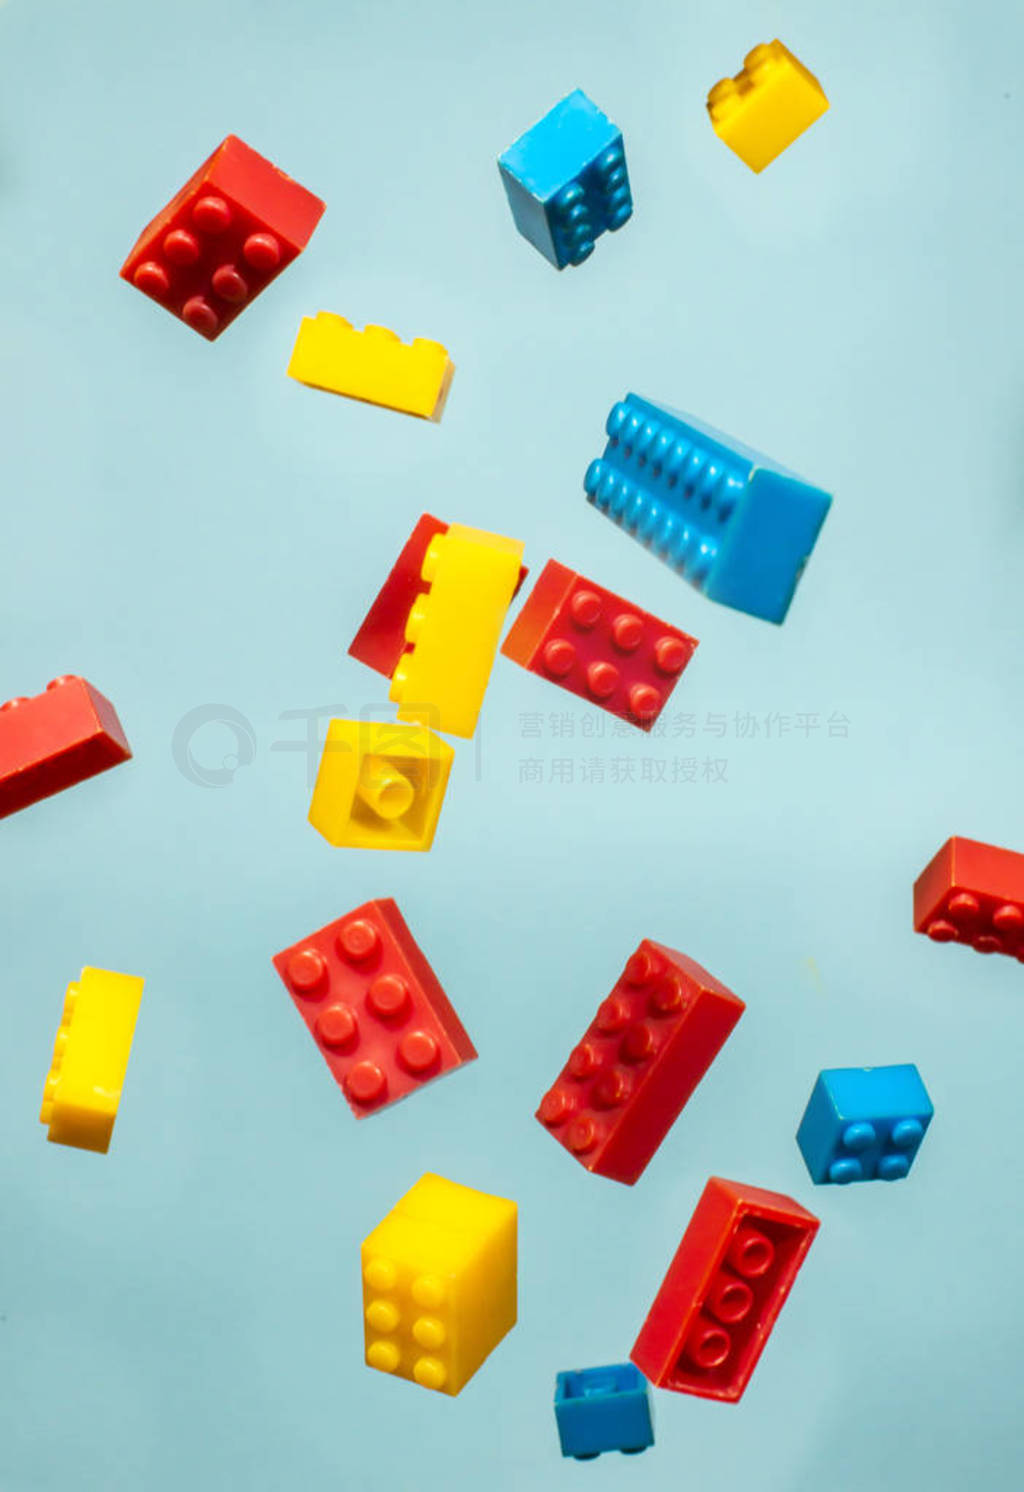 s toys. Circle geometric shapes on plastic bricks.